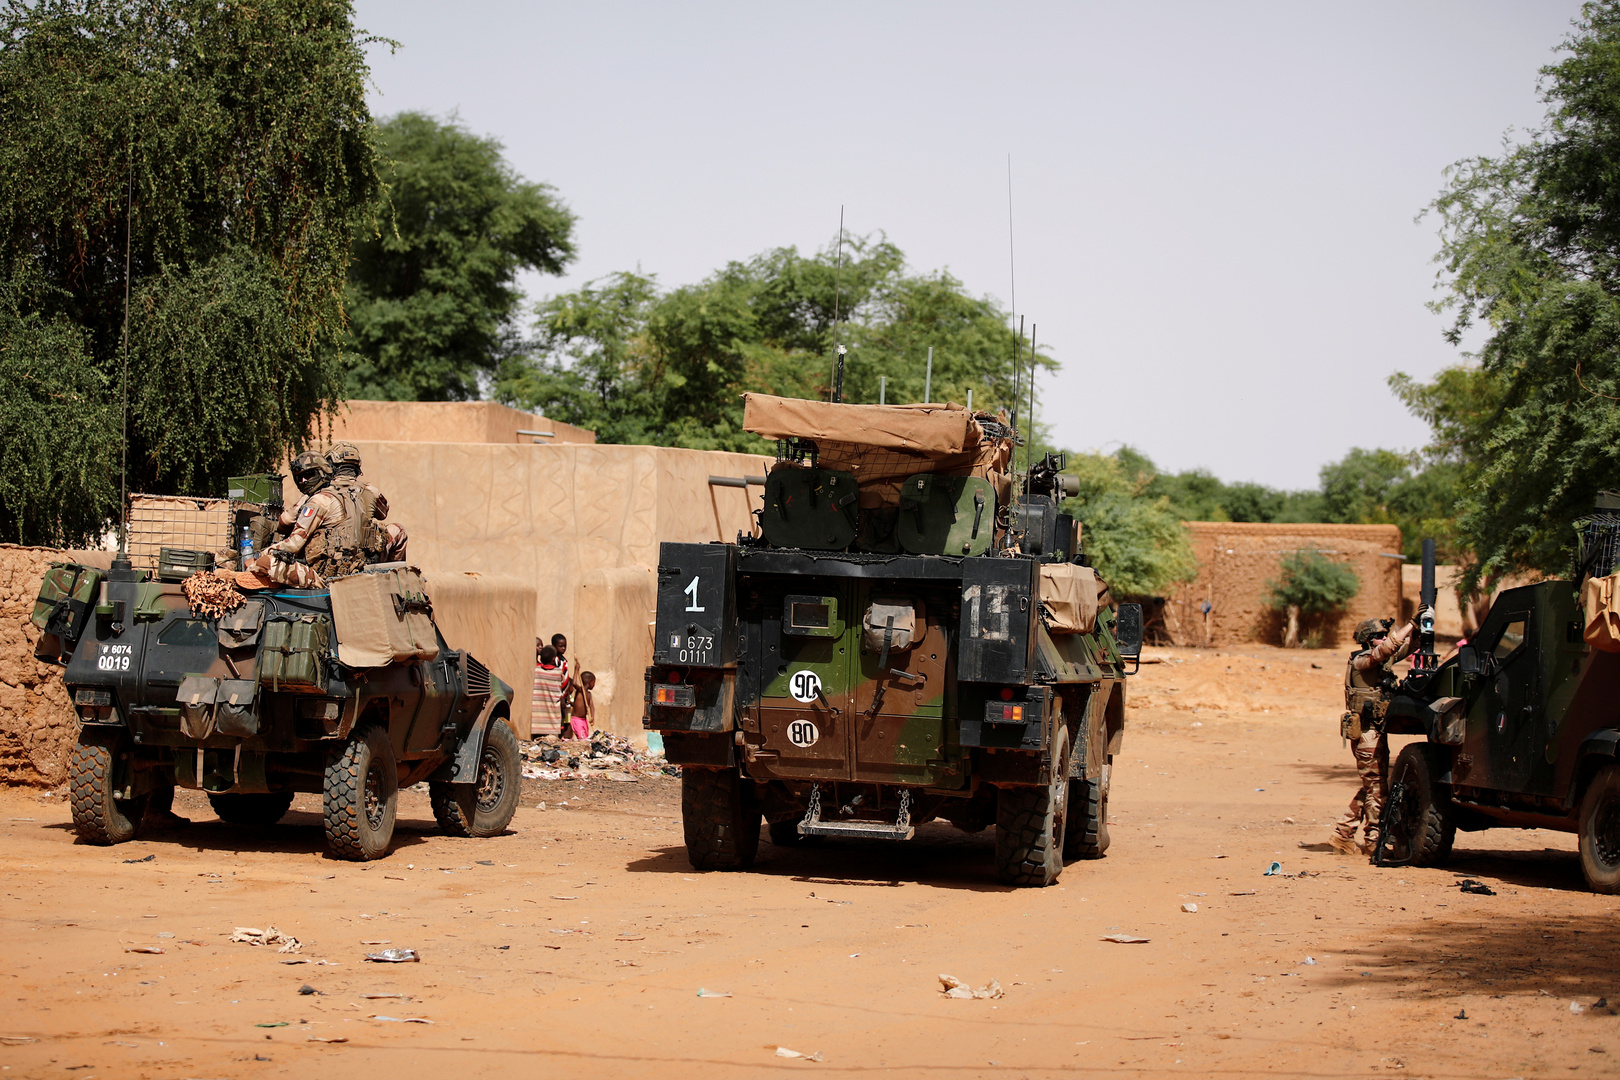 قصر الإليزيه: مقتل 3 جنود فرنسيين في مالي